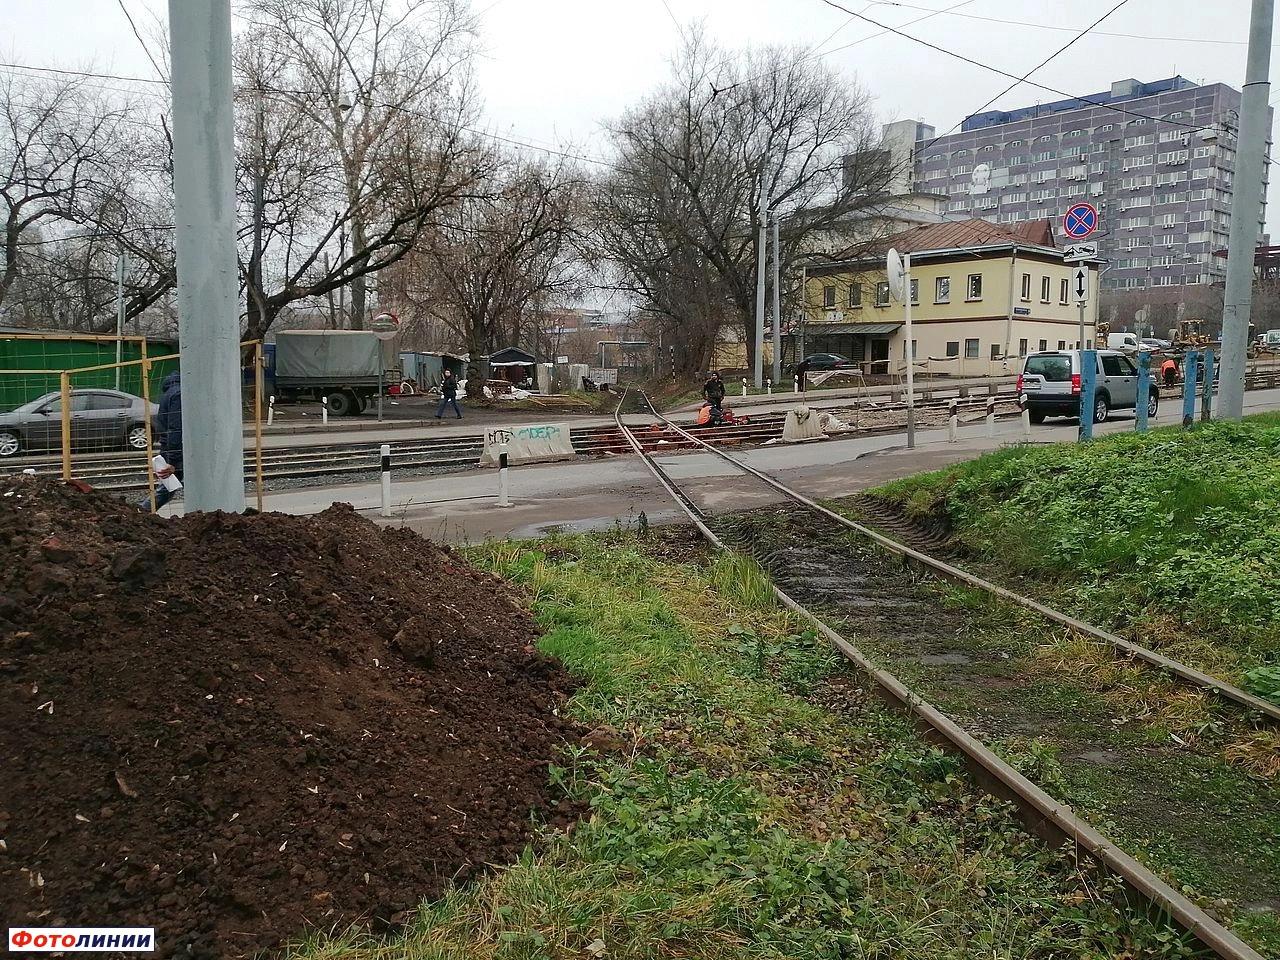 Подъездной путь на Электрозавод, пересечение с трамвайными путями Преображенского Вала, вид в сторону пассажирских путей